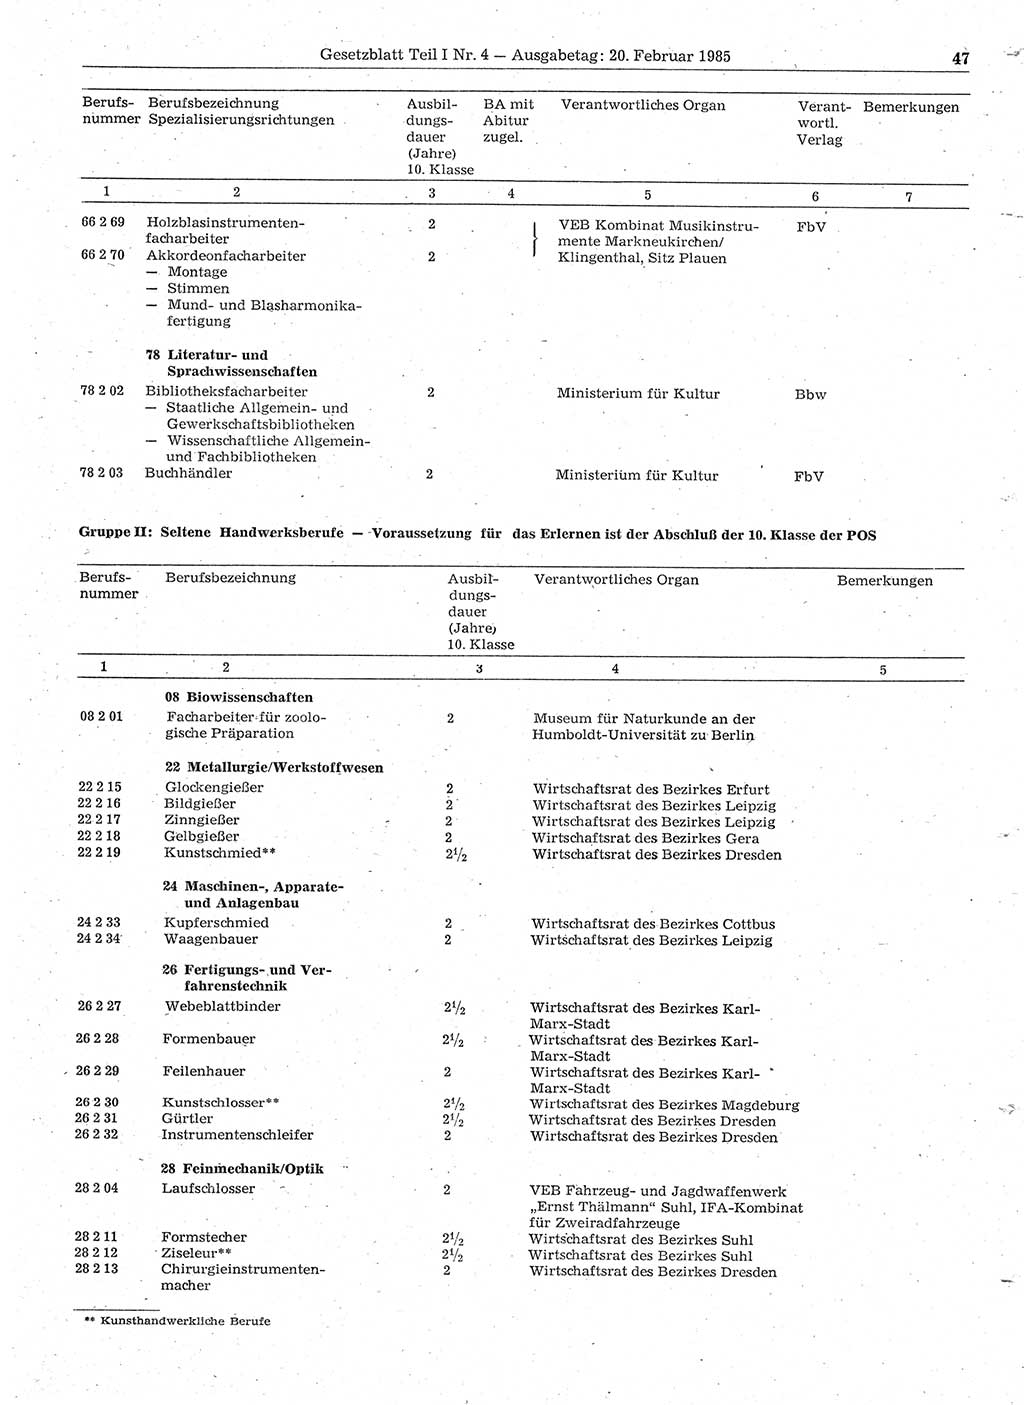 Gesetzblatt (GBl.) der Deutschen Demokratischen Republik (DDR) Teil Ⅰ 1985, Seite 47 (GBl. DDR Ⅰ 1985, S. 47)